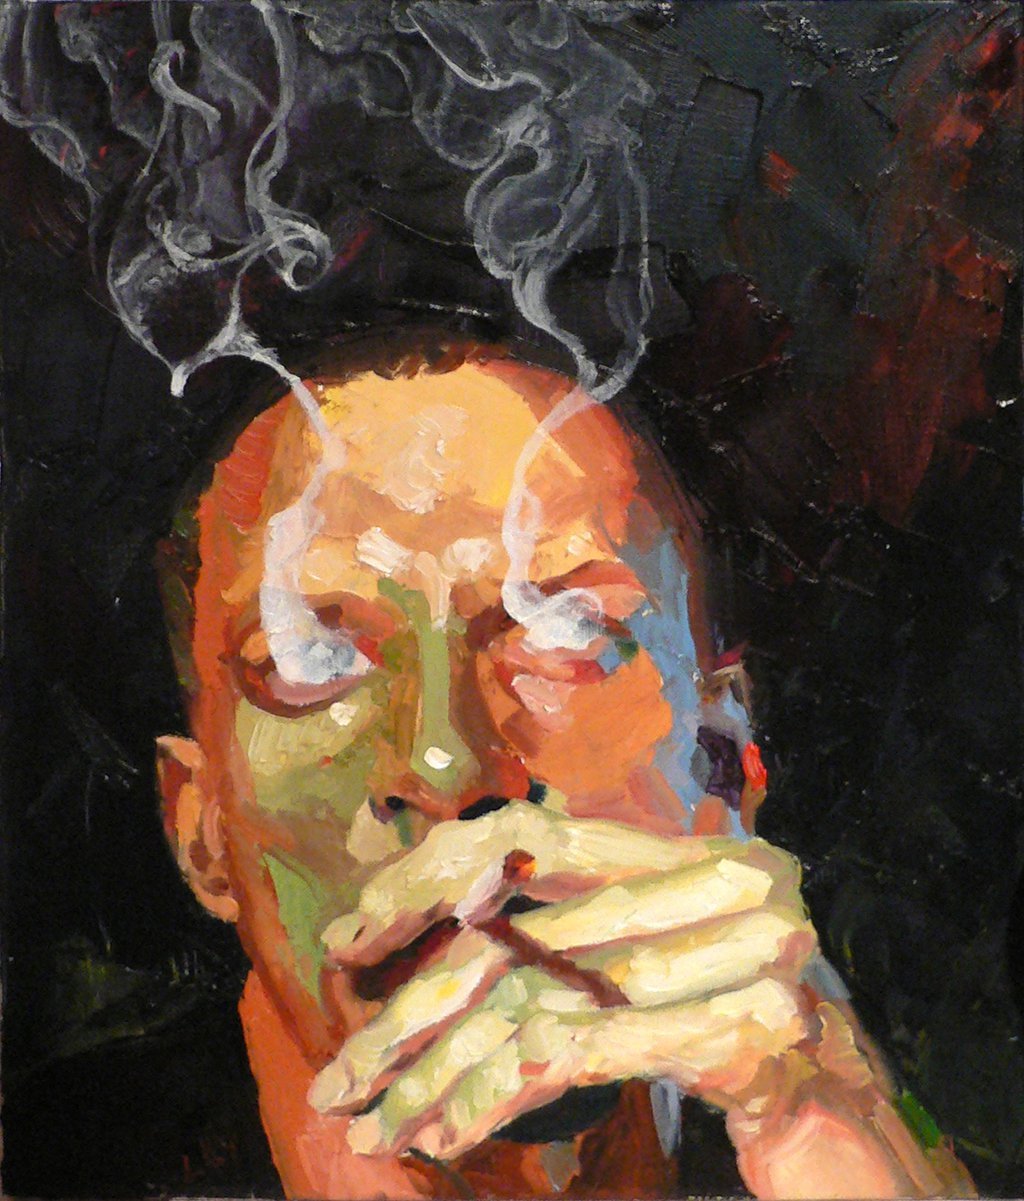 red-lipstick:  Bfaupin aka Bertrand Faupin (France) - Smoke (Self Portrait), 2013